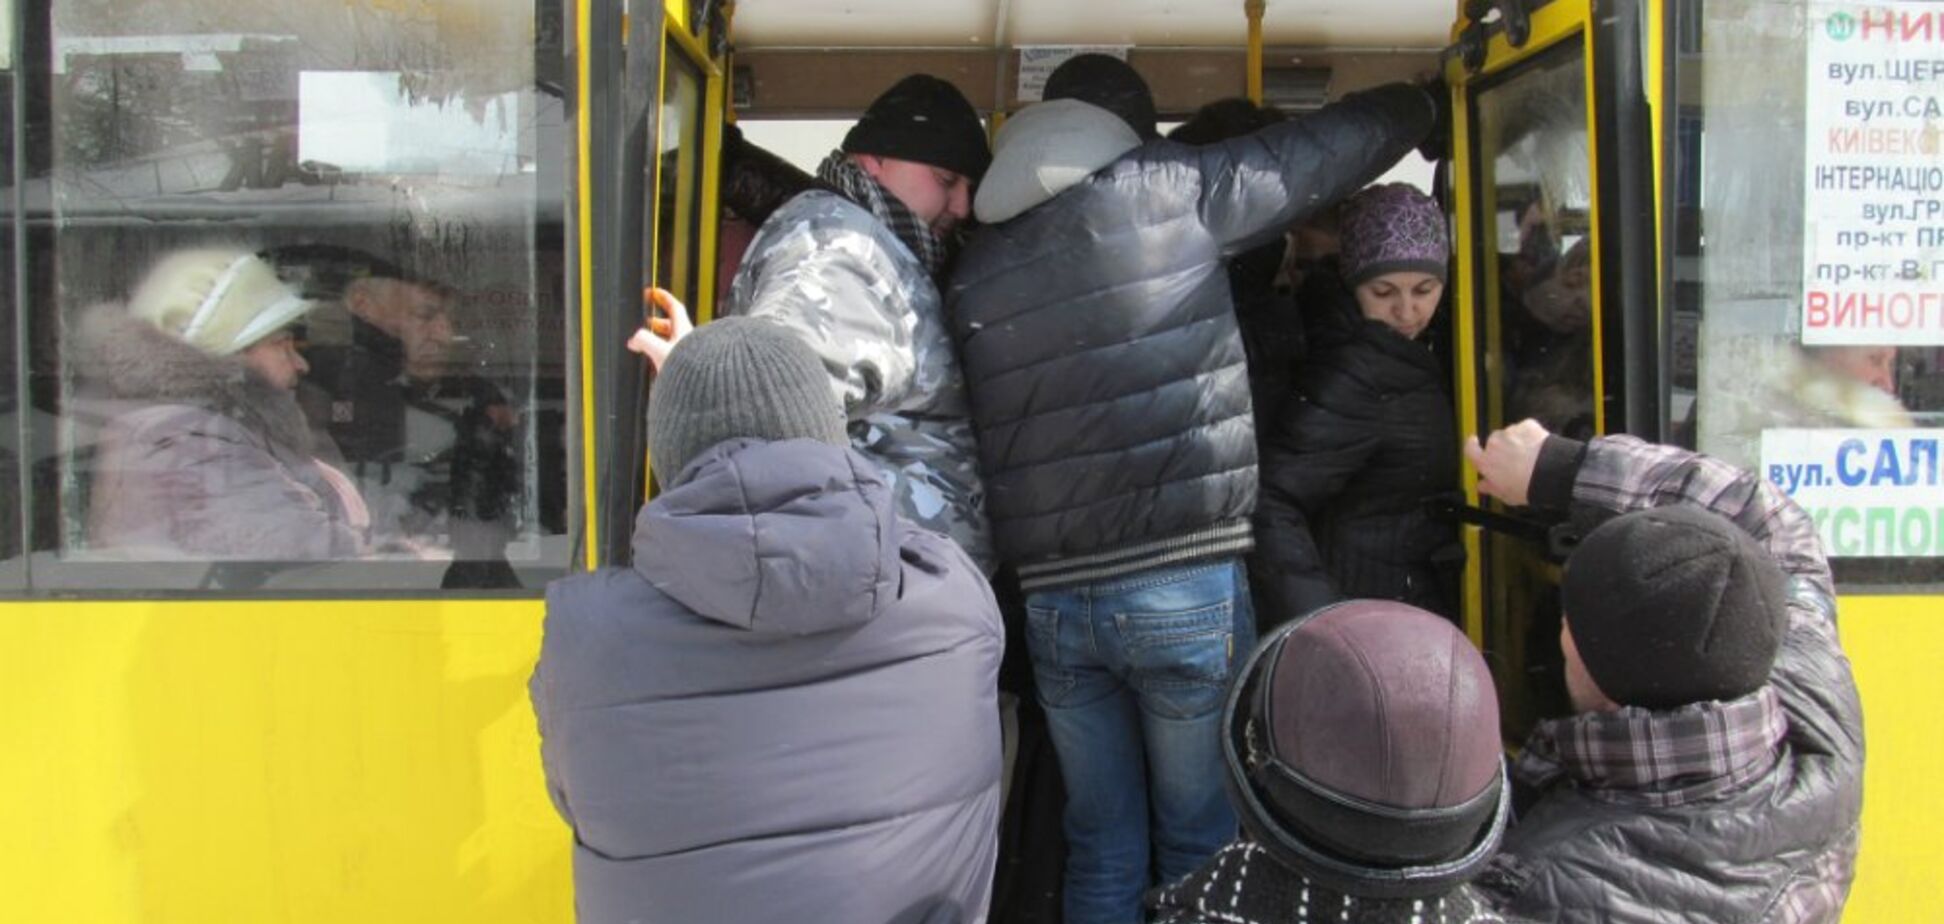 Жодної попси і шансону: у Києві жителі зробили несподівану пропозицію чиновникам